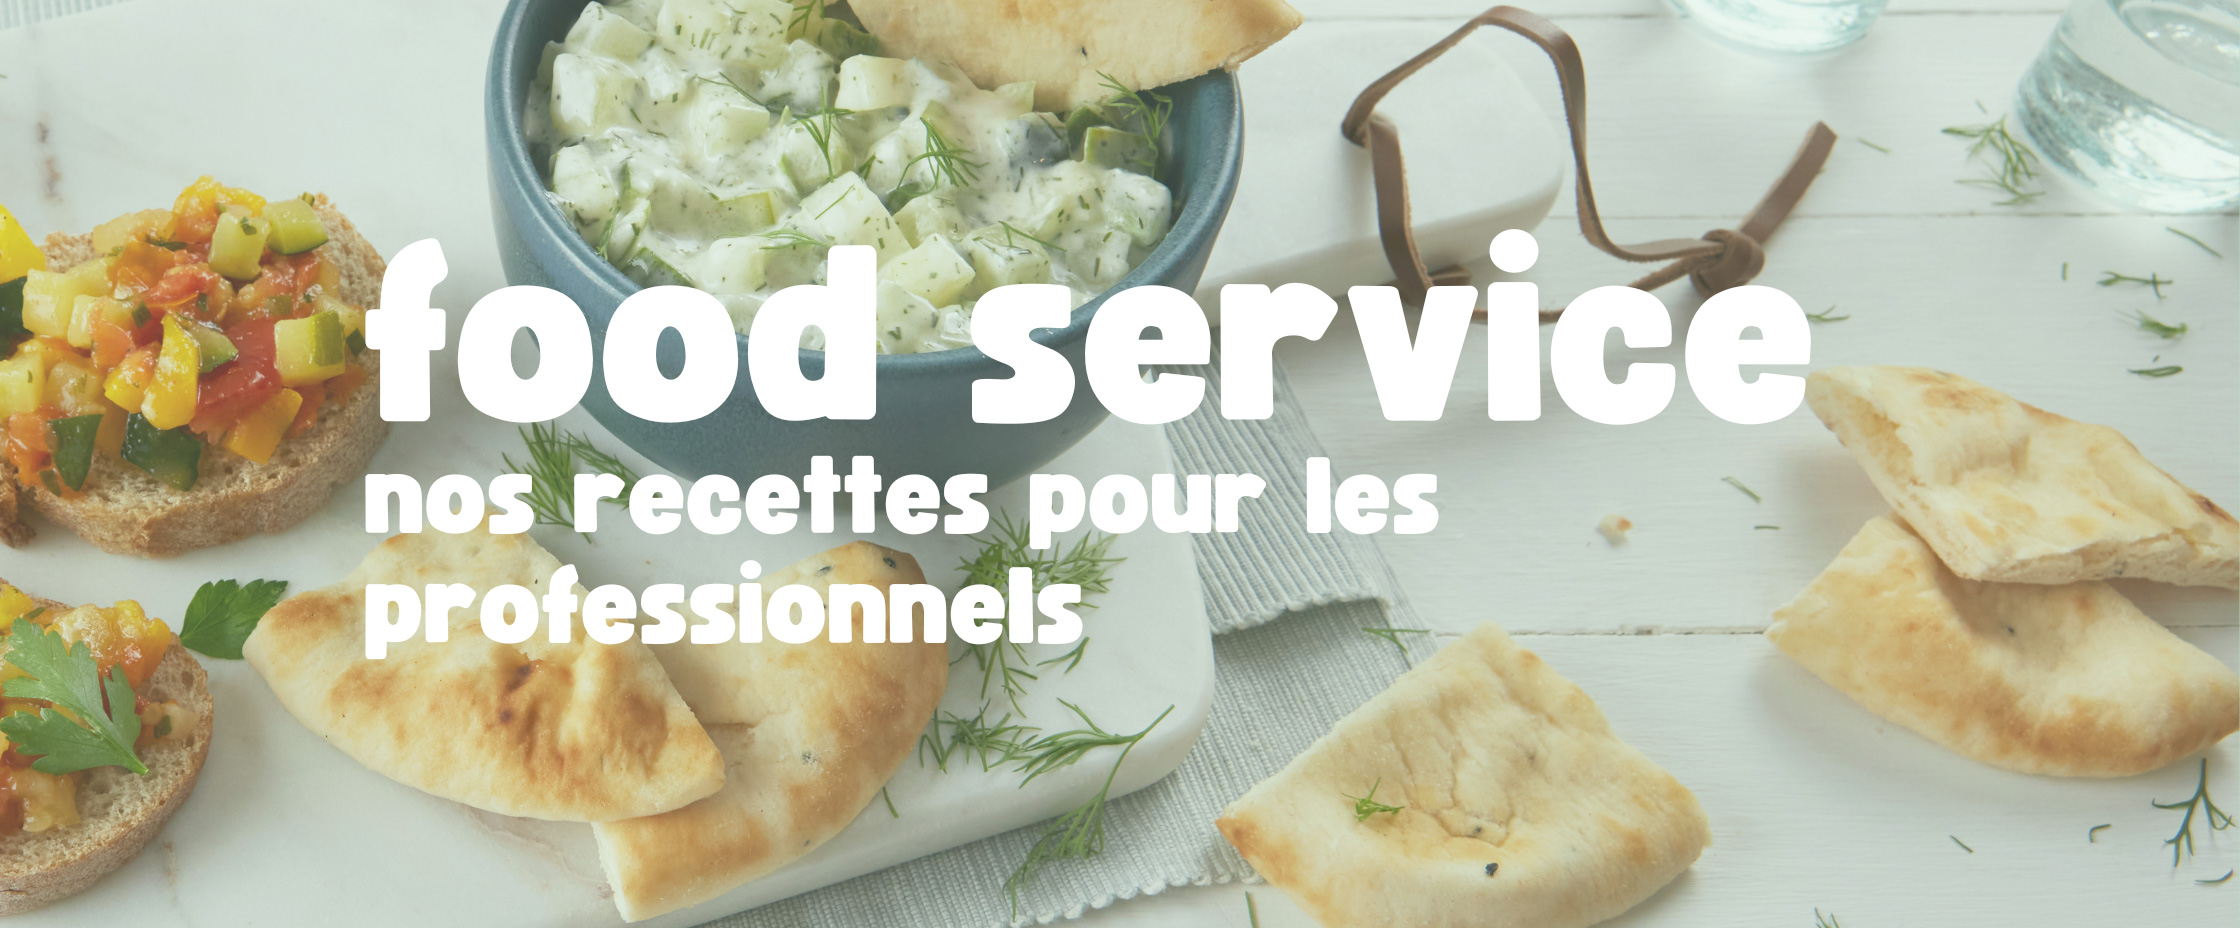 Food Service, nos recettes pour les professionnels